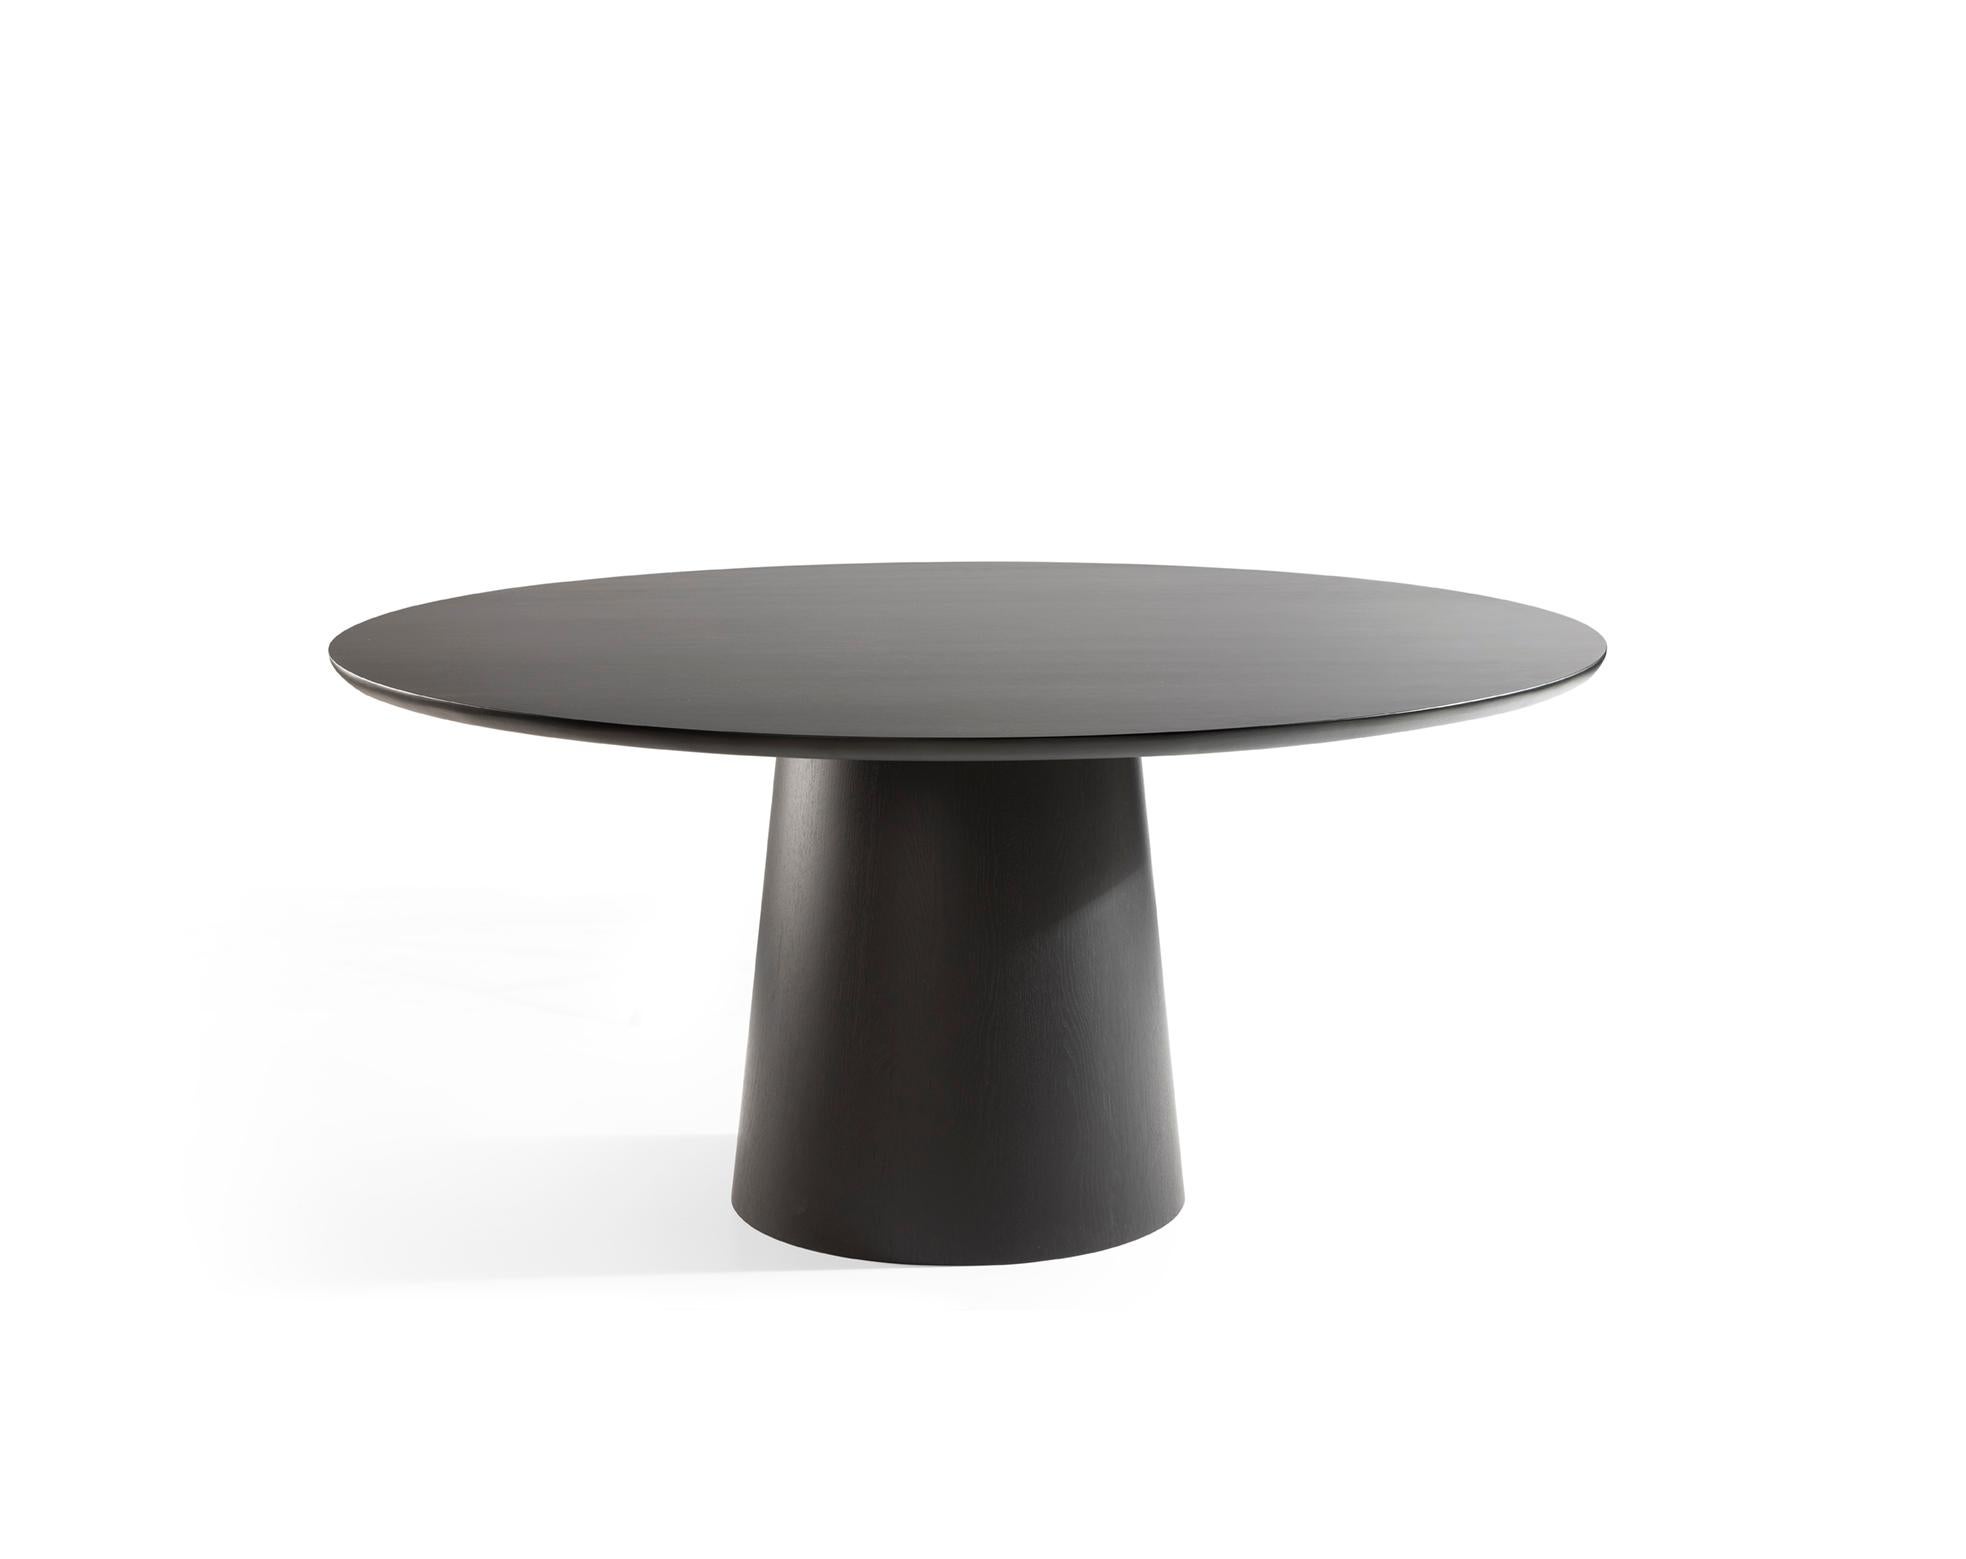 Der runde Esstisch 'Wonderwood' ist ein komplett massiver Tisch aus dunkel gebeizter Eiche mit einer matt lackierten Oberfläche. Die Farbe ist fast schwarz, aber bei Tageslicht ist noch ein brauner Wenge-Ton zu erkennen. Die Farbe ist daher sehr